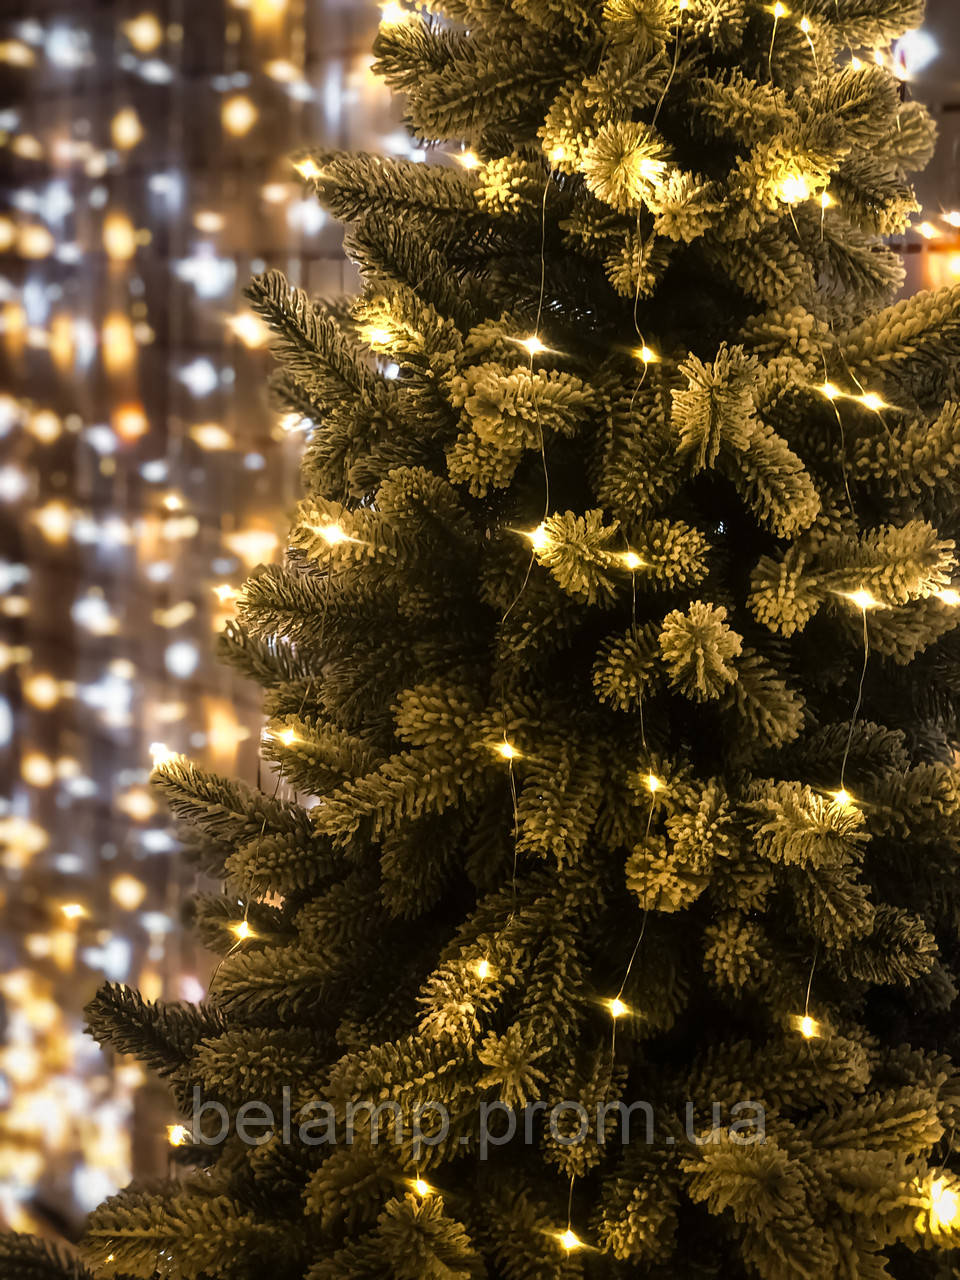 

Новогодняя гирлянда на елку конский хвост «Тёплые огни»